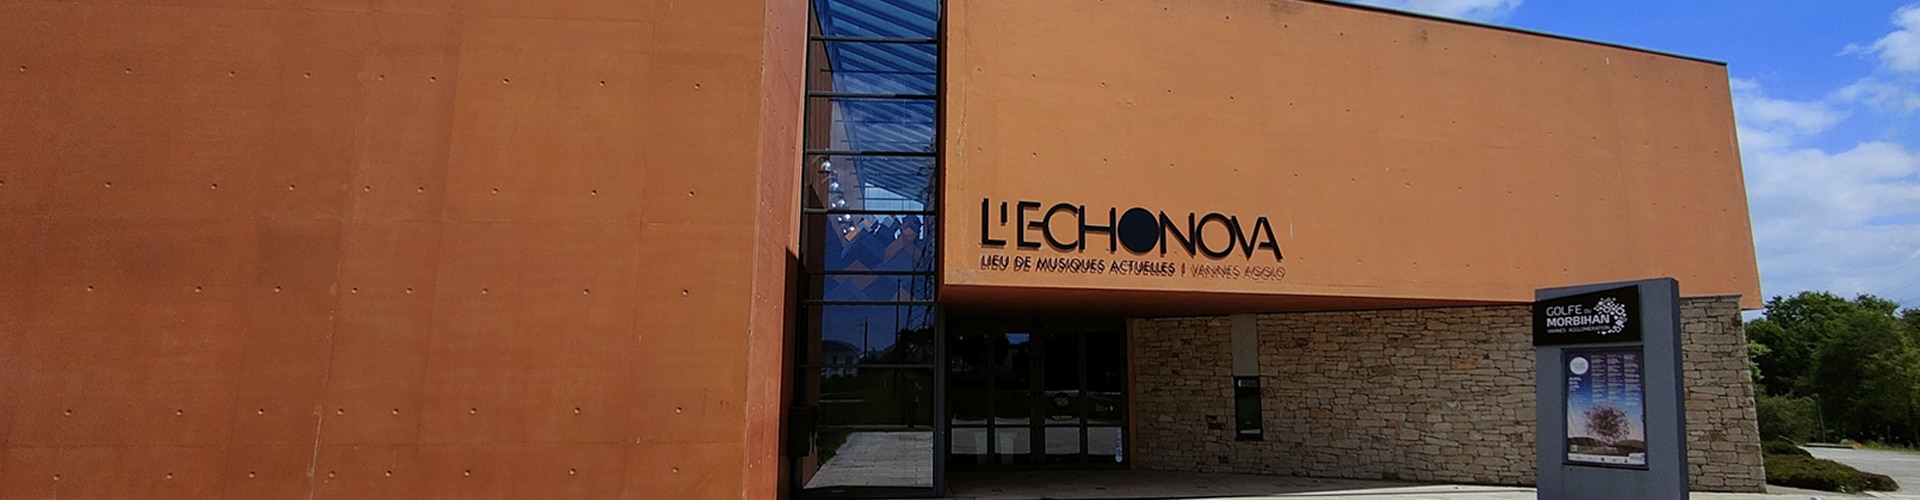 lechonova facade